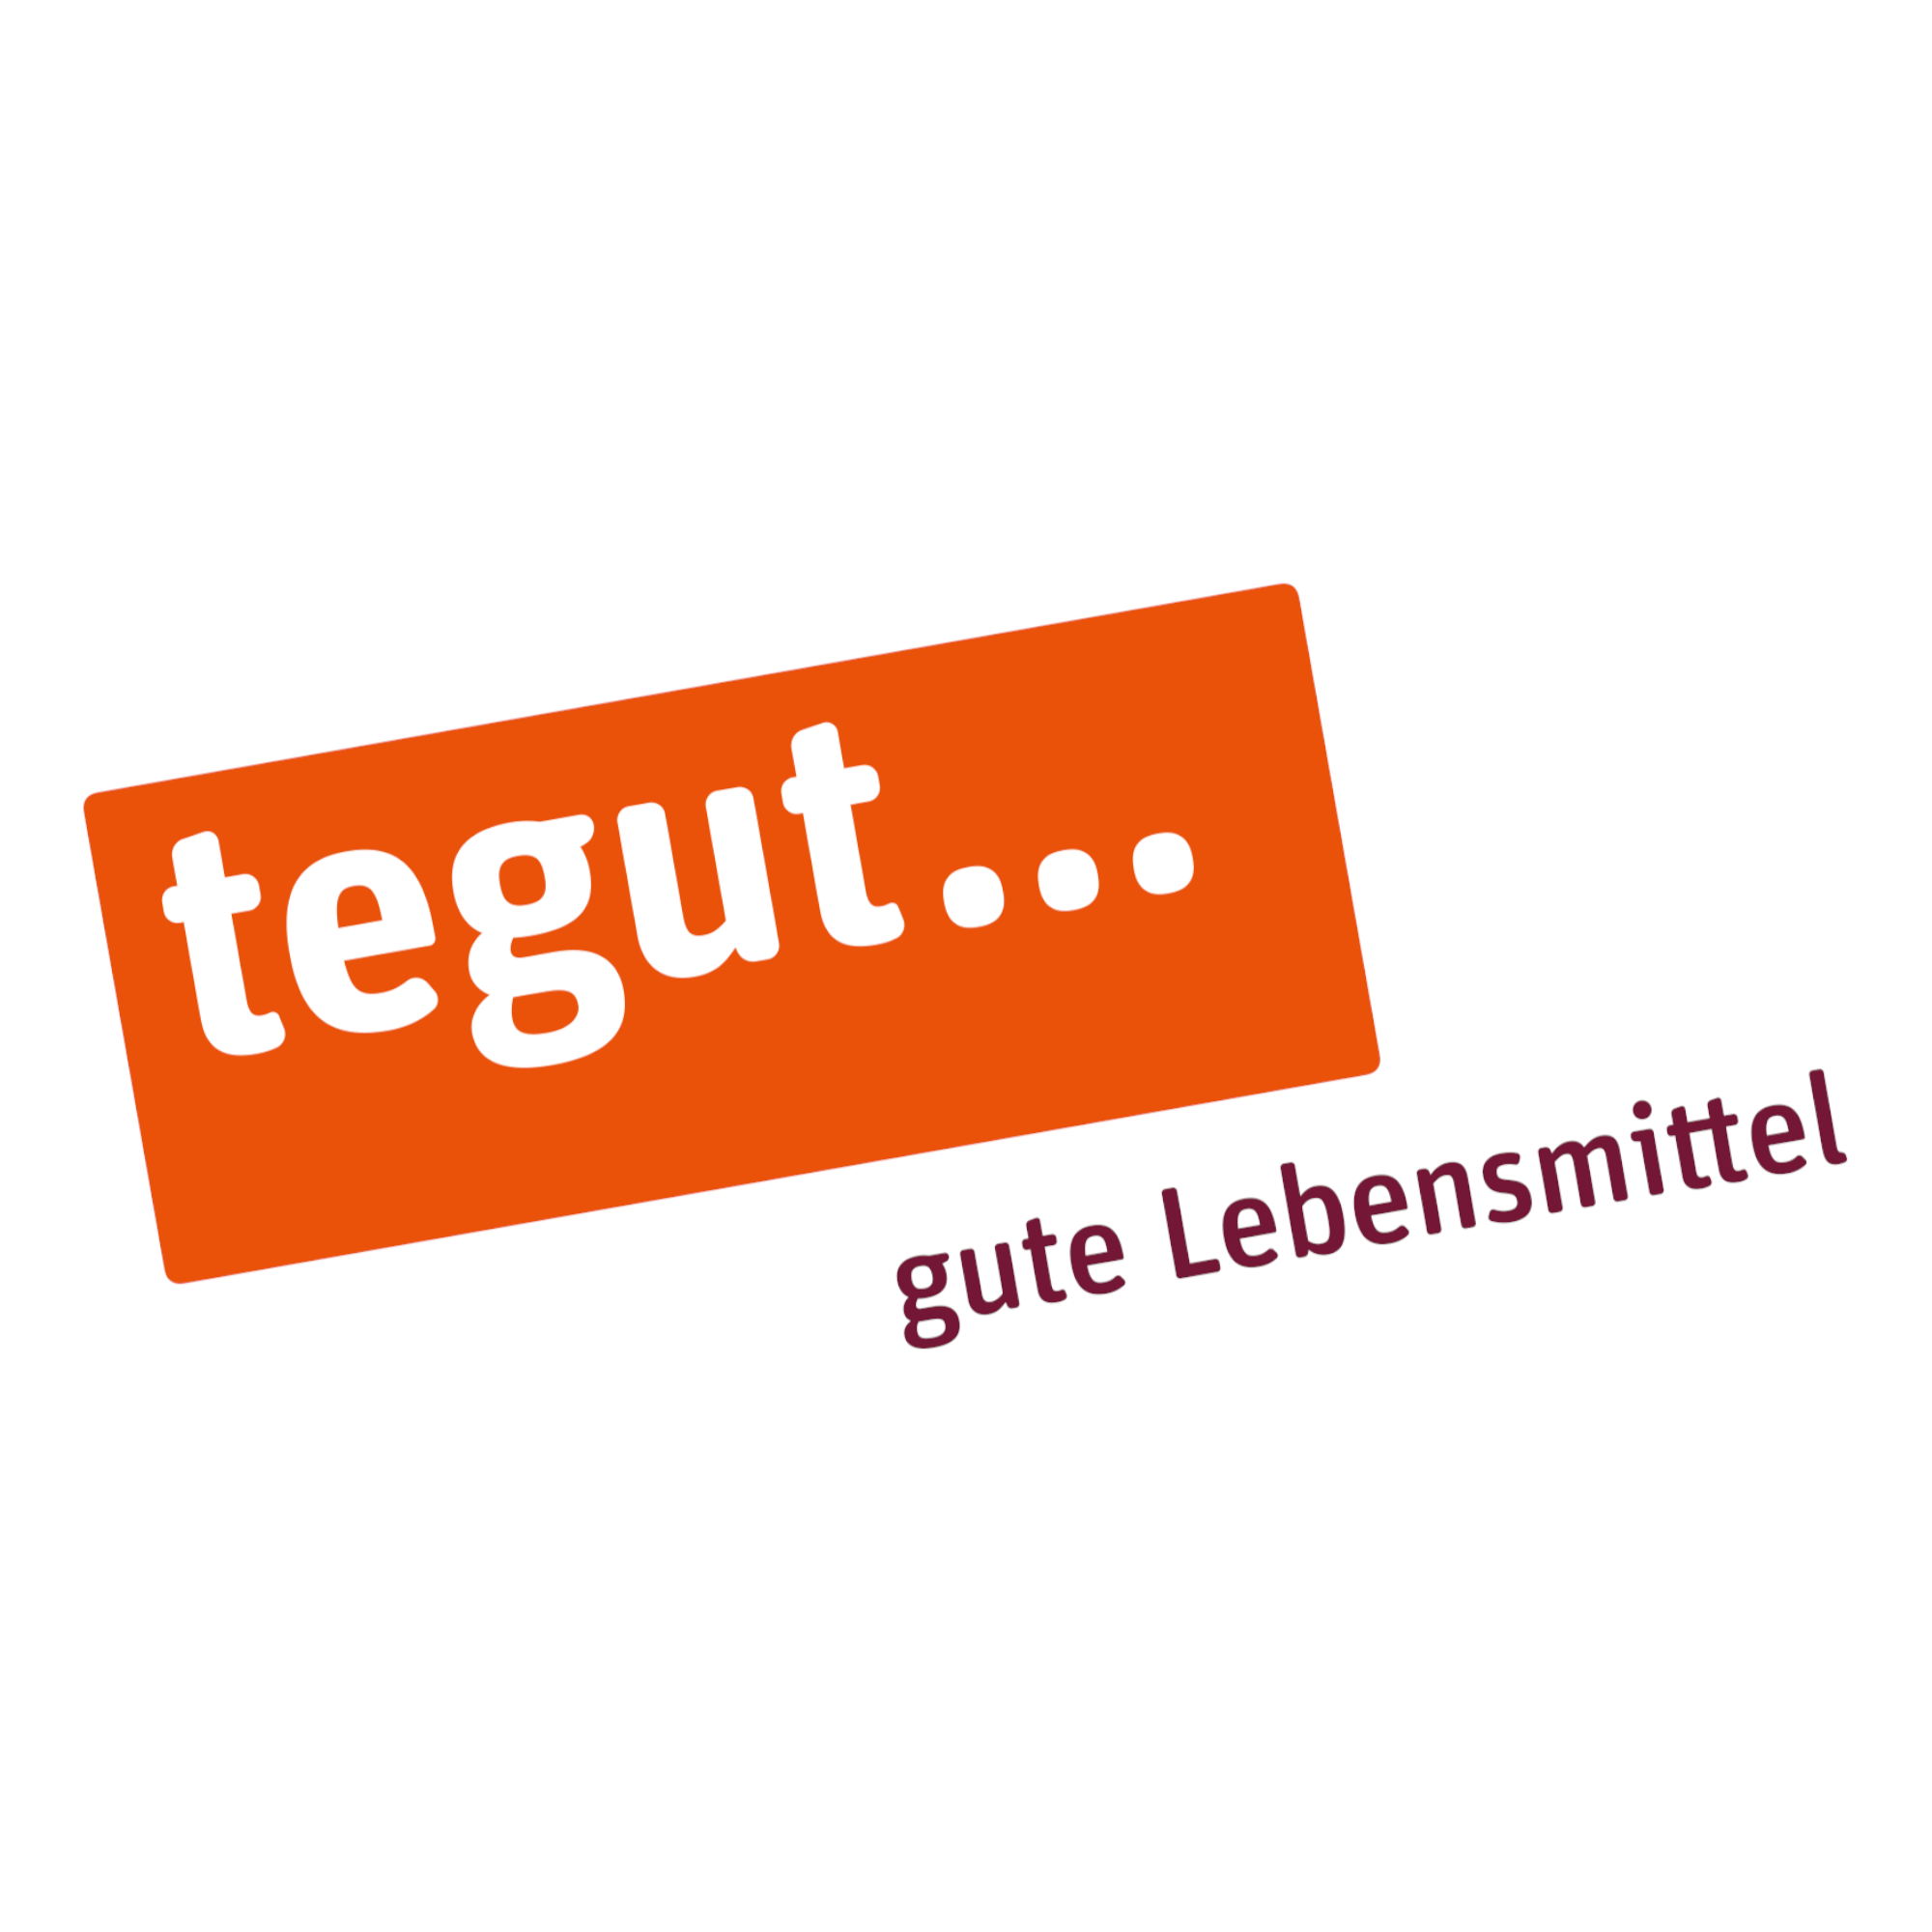 tegut... gute Lebensmittel in Waiblingen - Logo